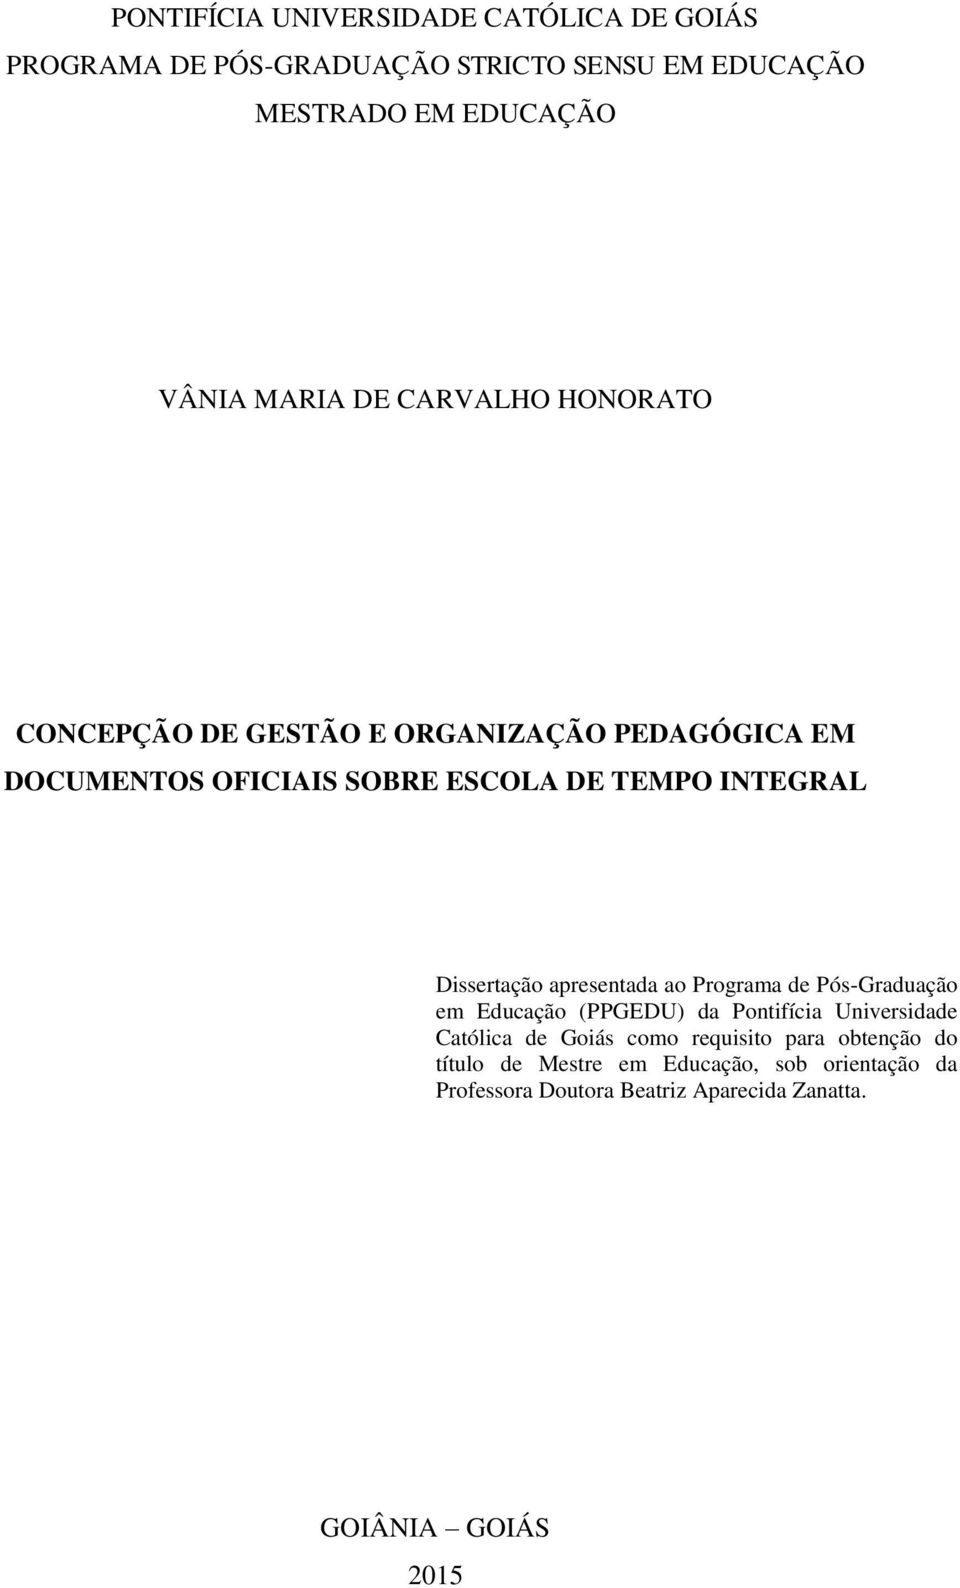 Dissertação apresentada ao Programa de Pós-Graduação em Educação (PPGEDU) da Pontifícia Universidade Católica de Goiás como